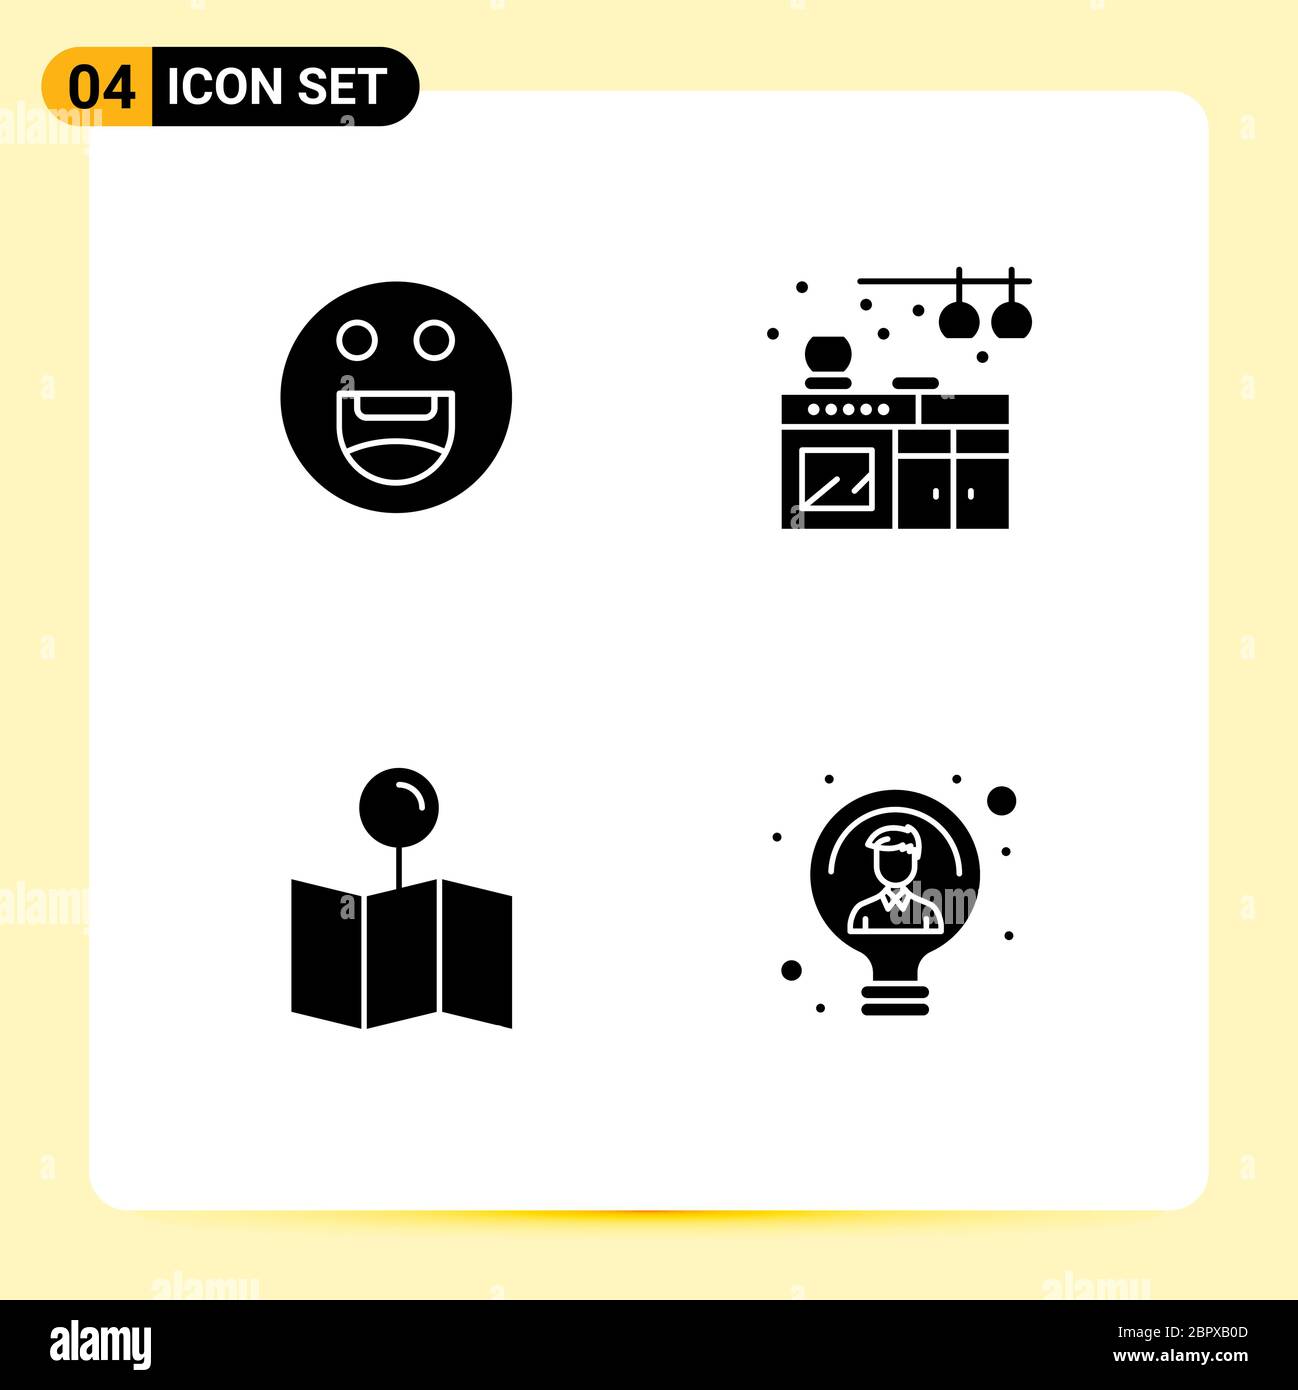 Moderno set di 4 glifi solidi e simboli come emoji, pin, casa, posizione, elementi di progettazione vettoriale editabili idea Illustrazione Vettoriale